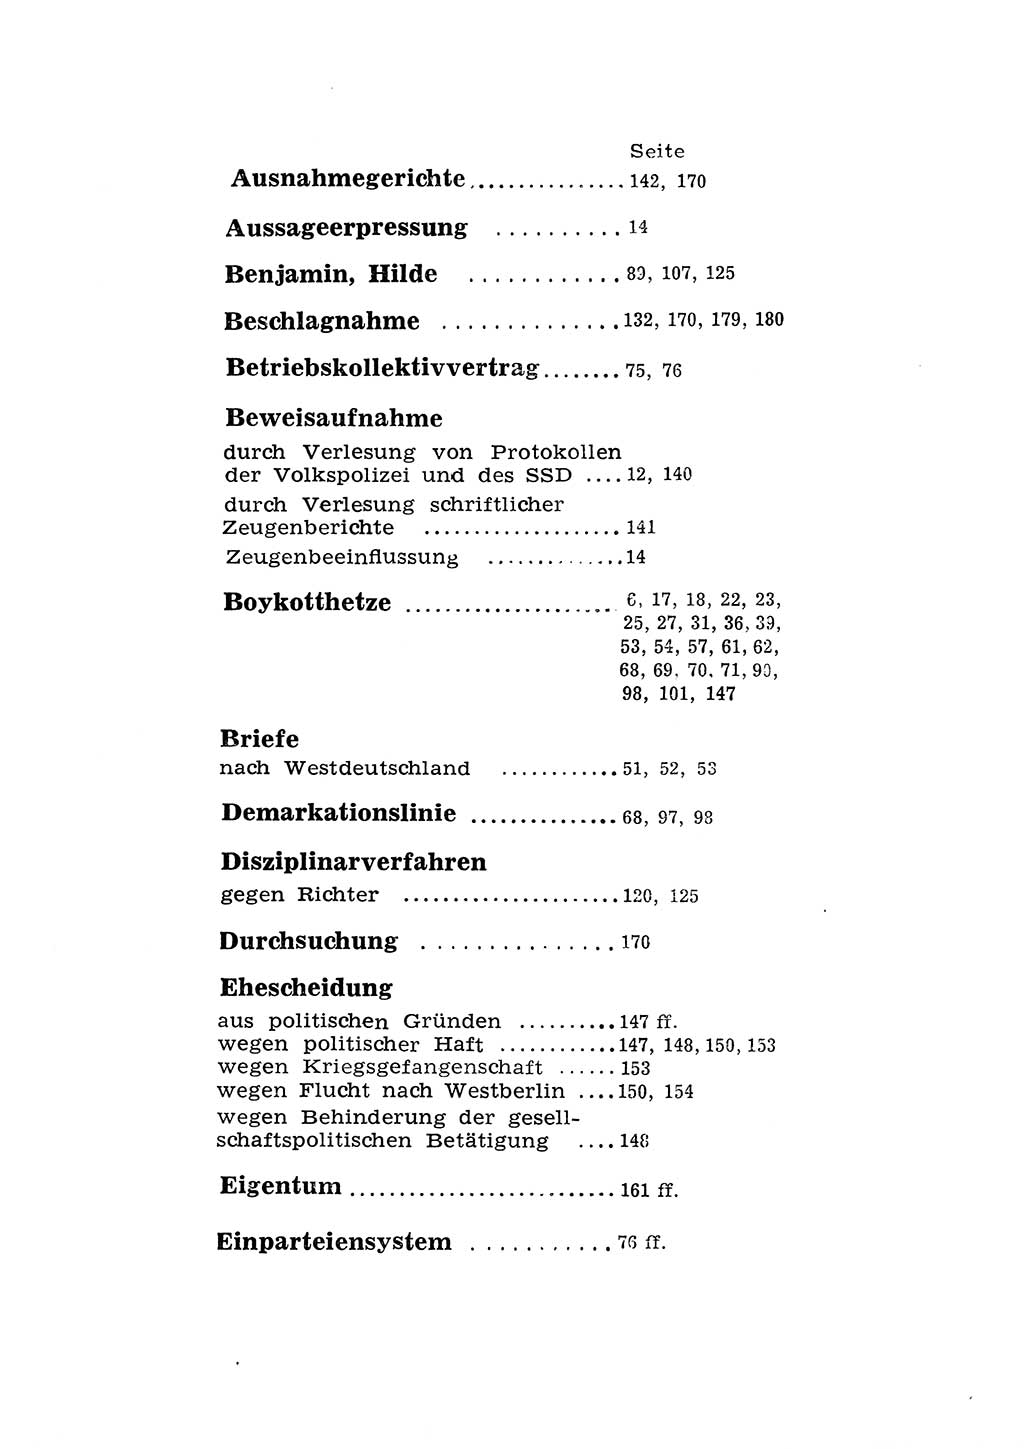 Katalog des Unrechts, Untersuchungsausschuß Freiheitlicher Juristen (UfJ) [Bundesrepublik Deutschland (BRD)] 1956, Seite 198 (Kat. UnR. UfJ BRD 1956, S. 198)